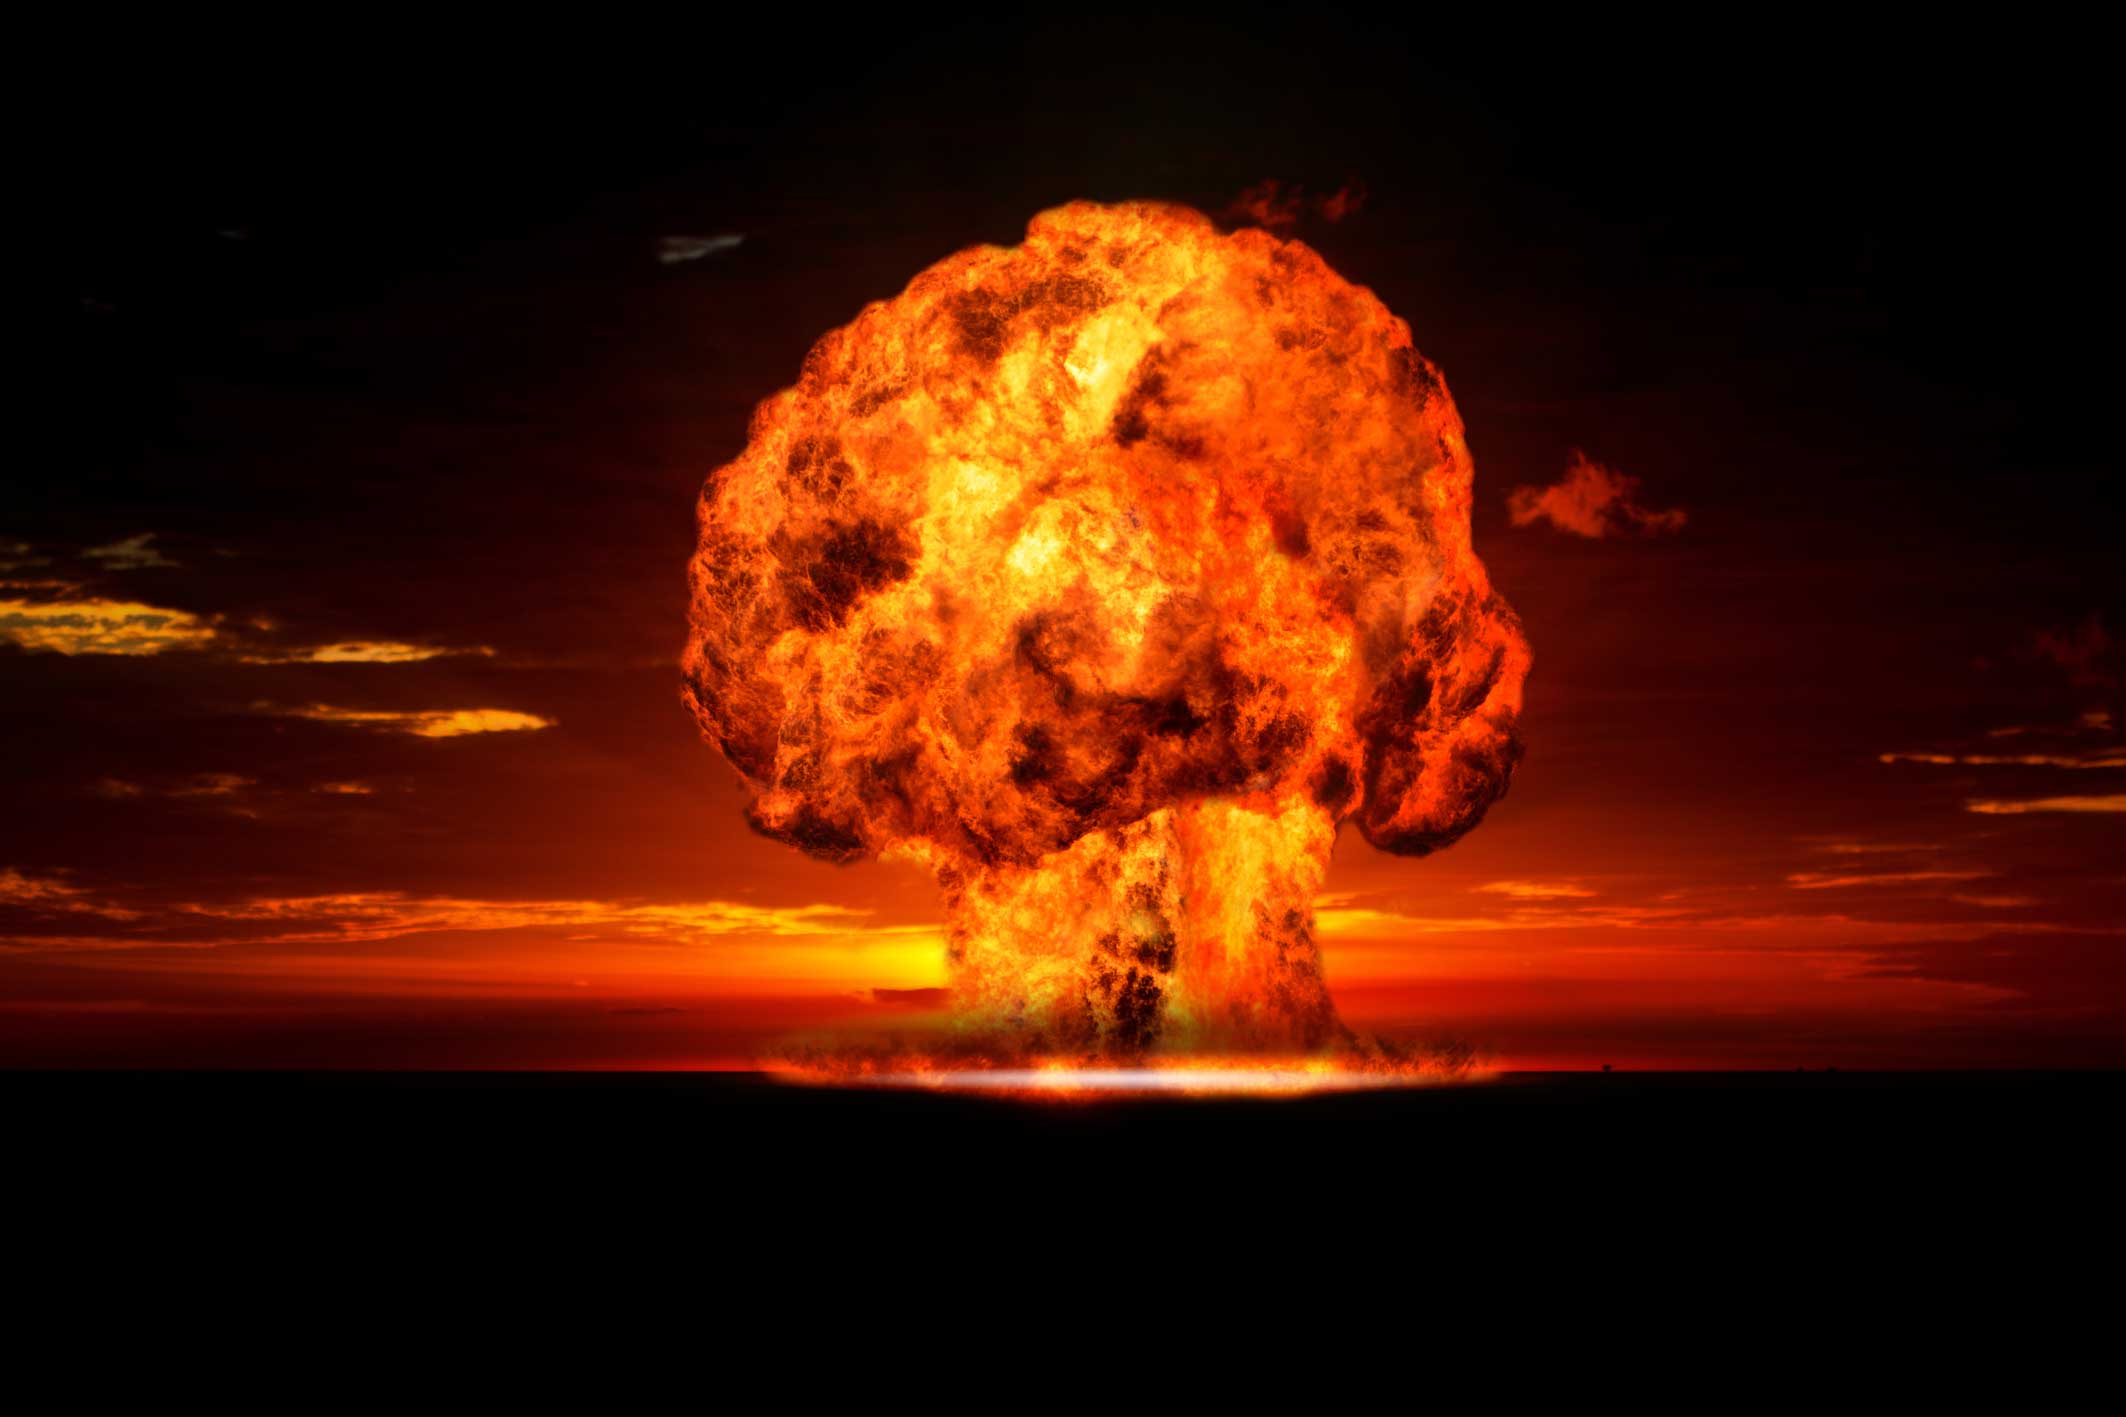 Fotos de explosão nuclear